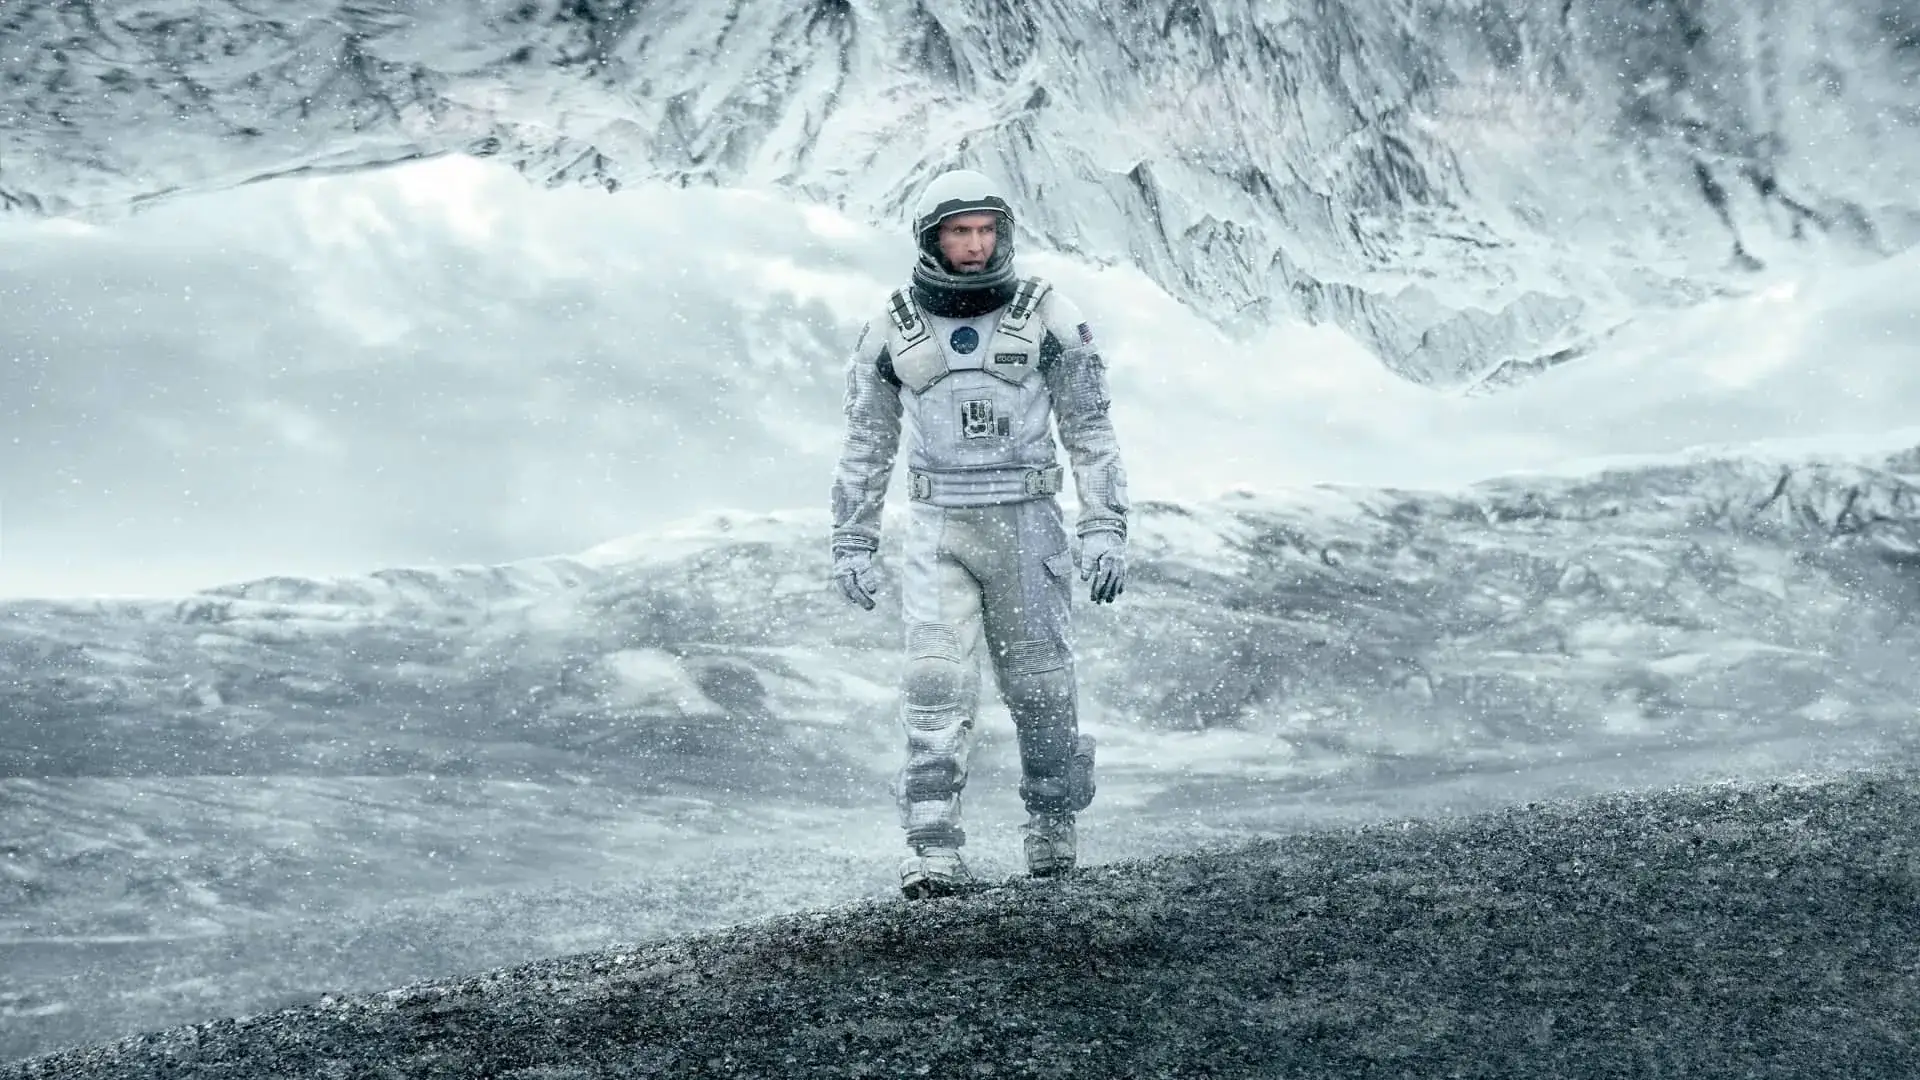 Imagen promocional de Interstellar con un hombre en la nieve con un traje de astronauta